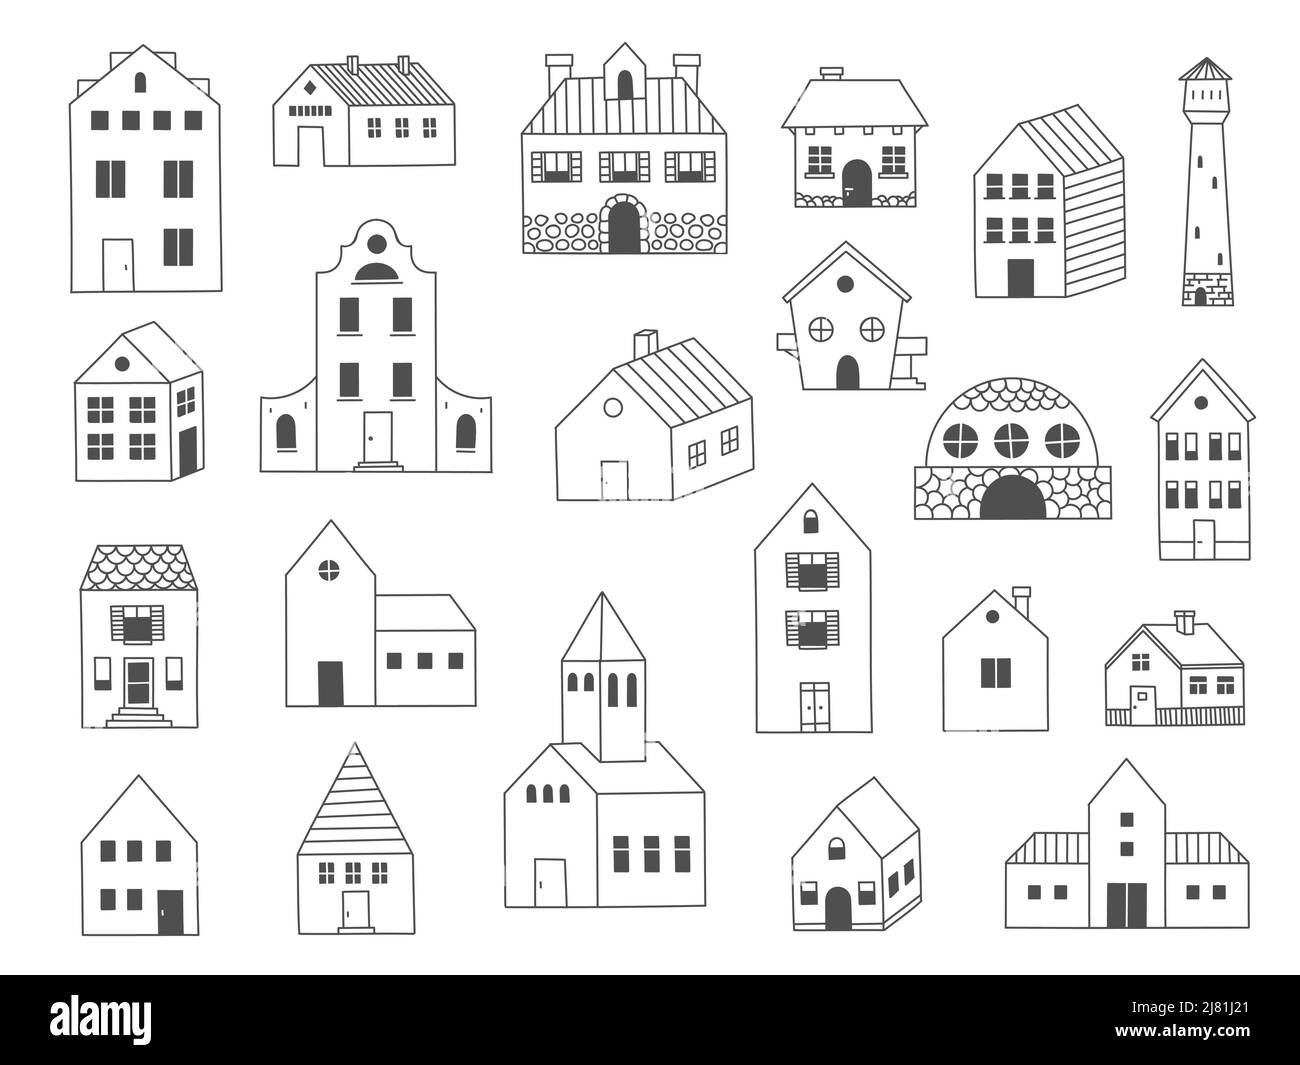 Doodle House. Niedliche Hütte Holzgebäude, lustige handgezeichnete Hütte und Scheune Skizze. Vector Dorf ländlichen Haushalt isoliert gesetzt Stock Vektor